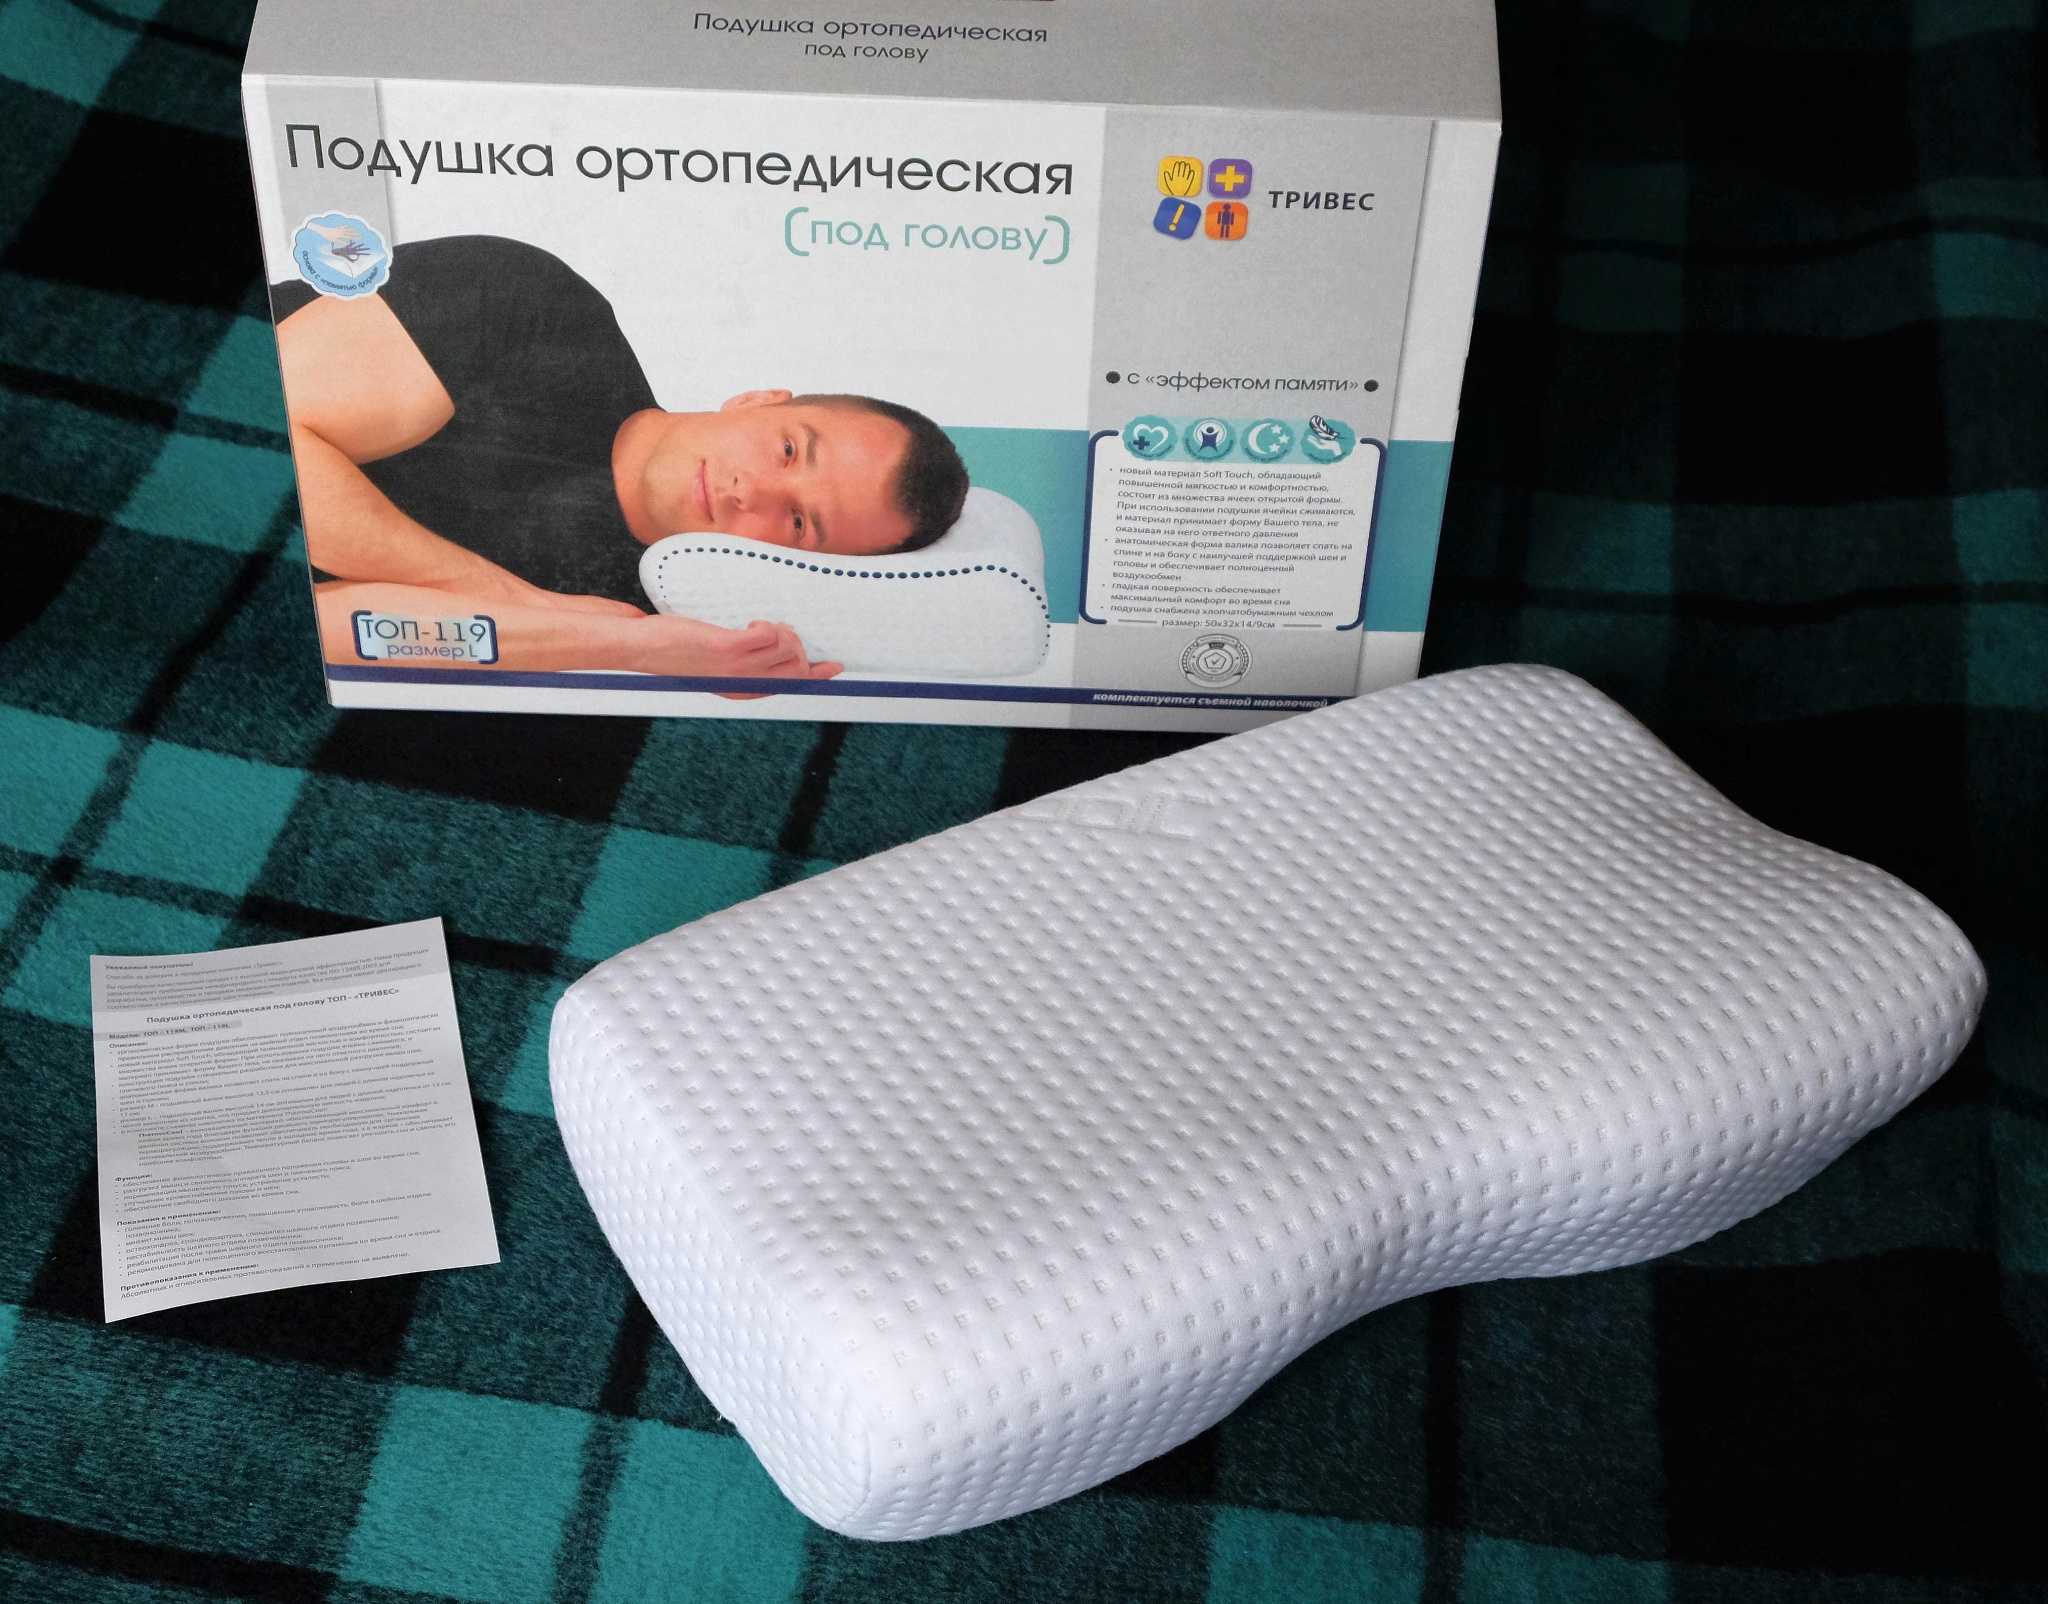 Как выбрать правильную ортопедическую подушку для сна